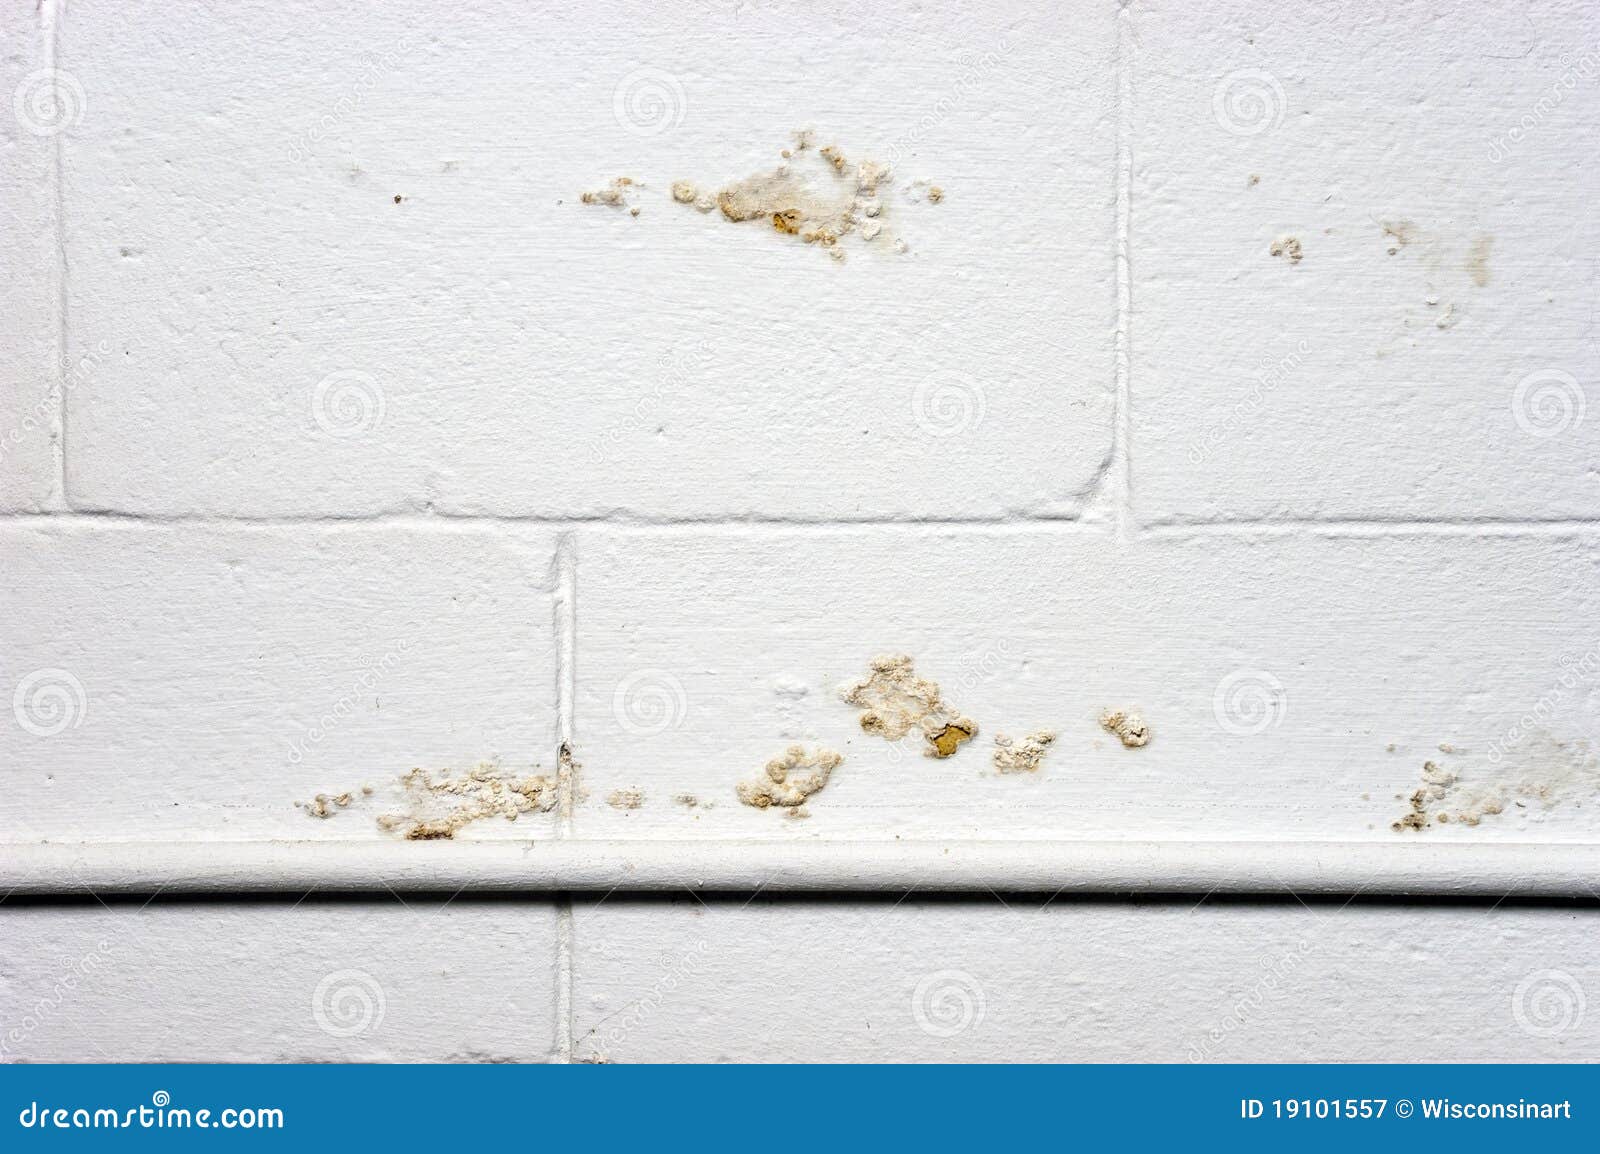 basement wall water moisture seepage damage leak